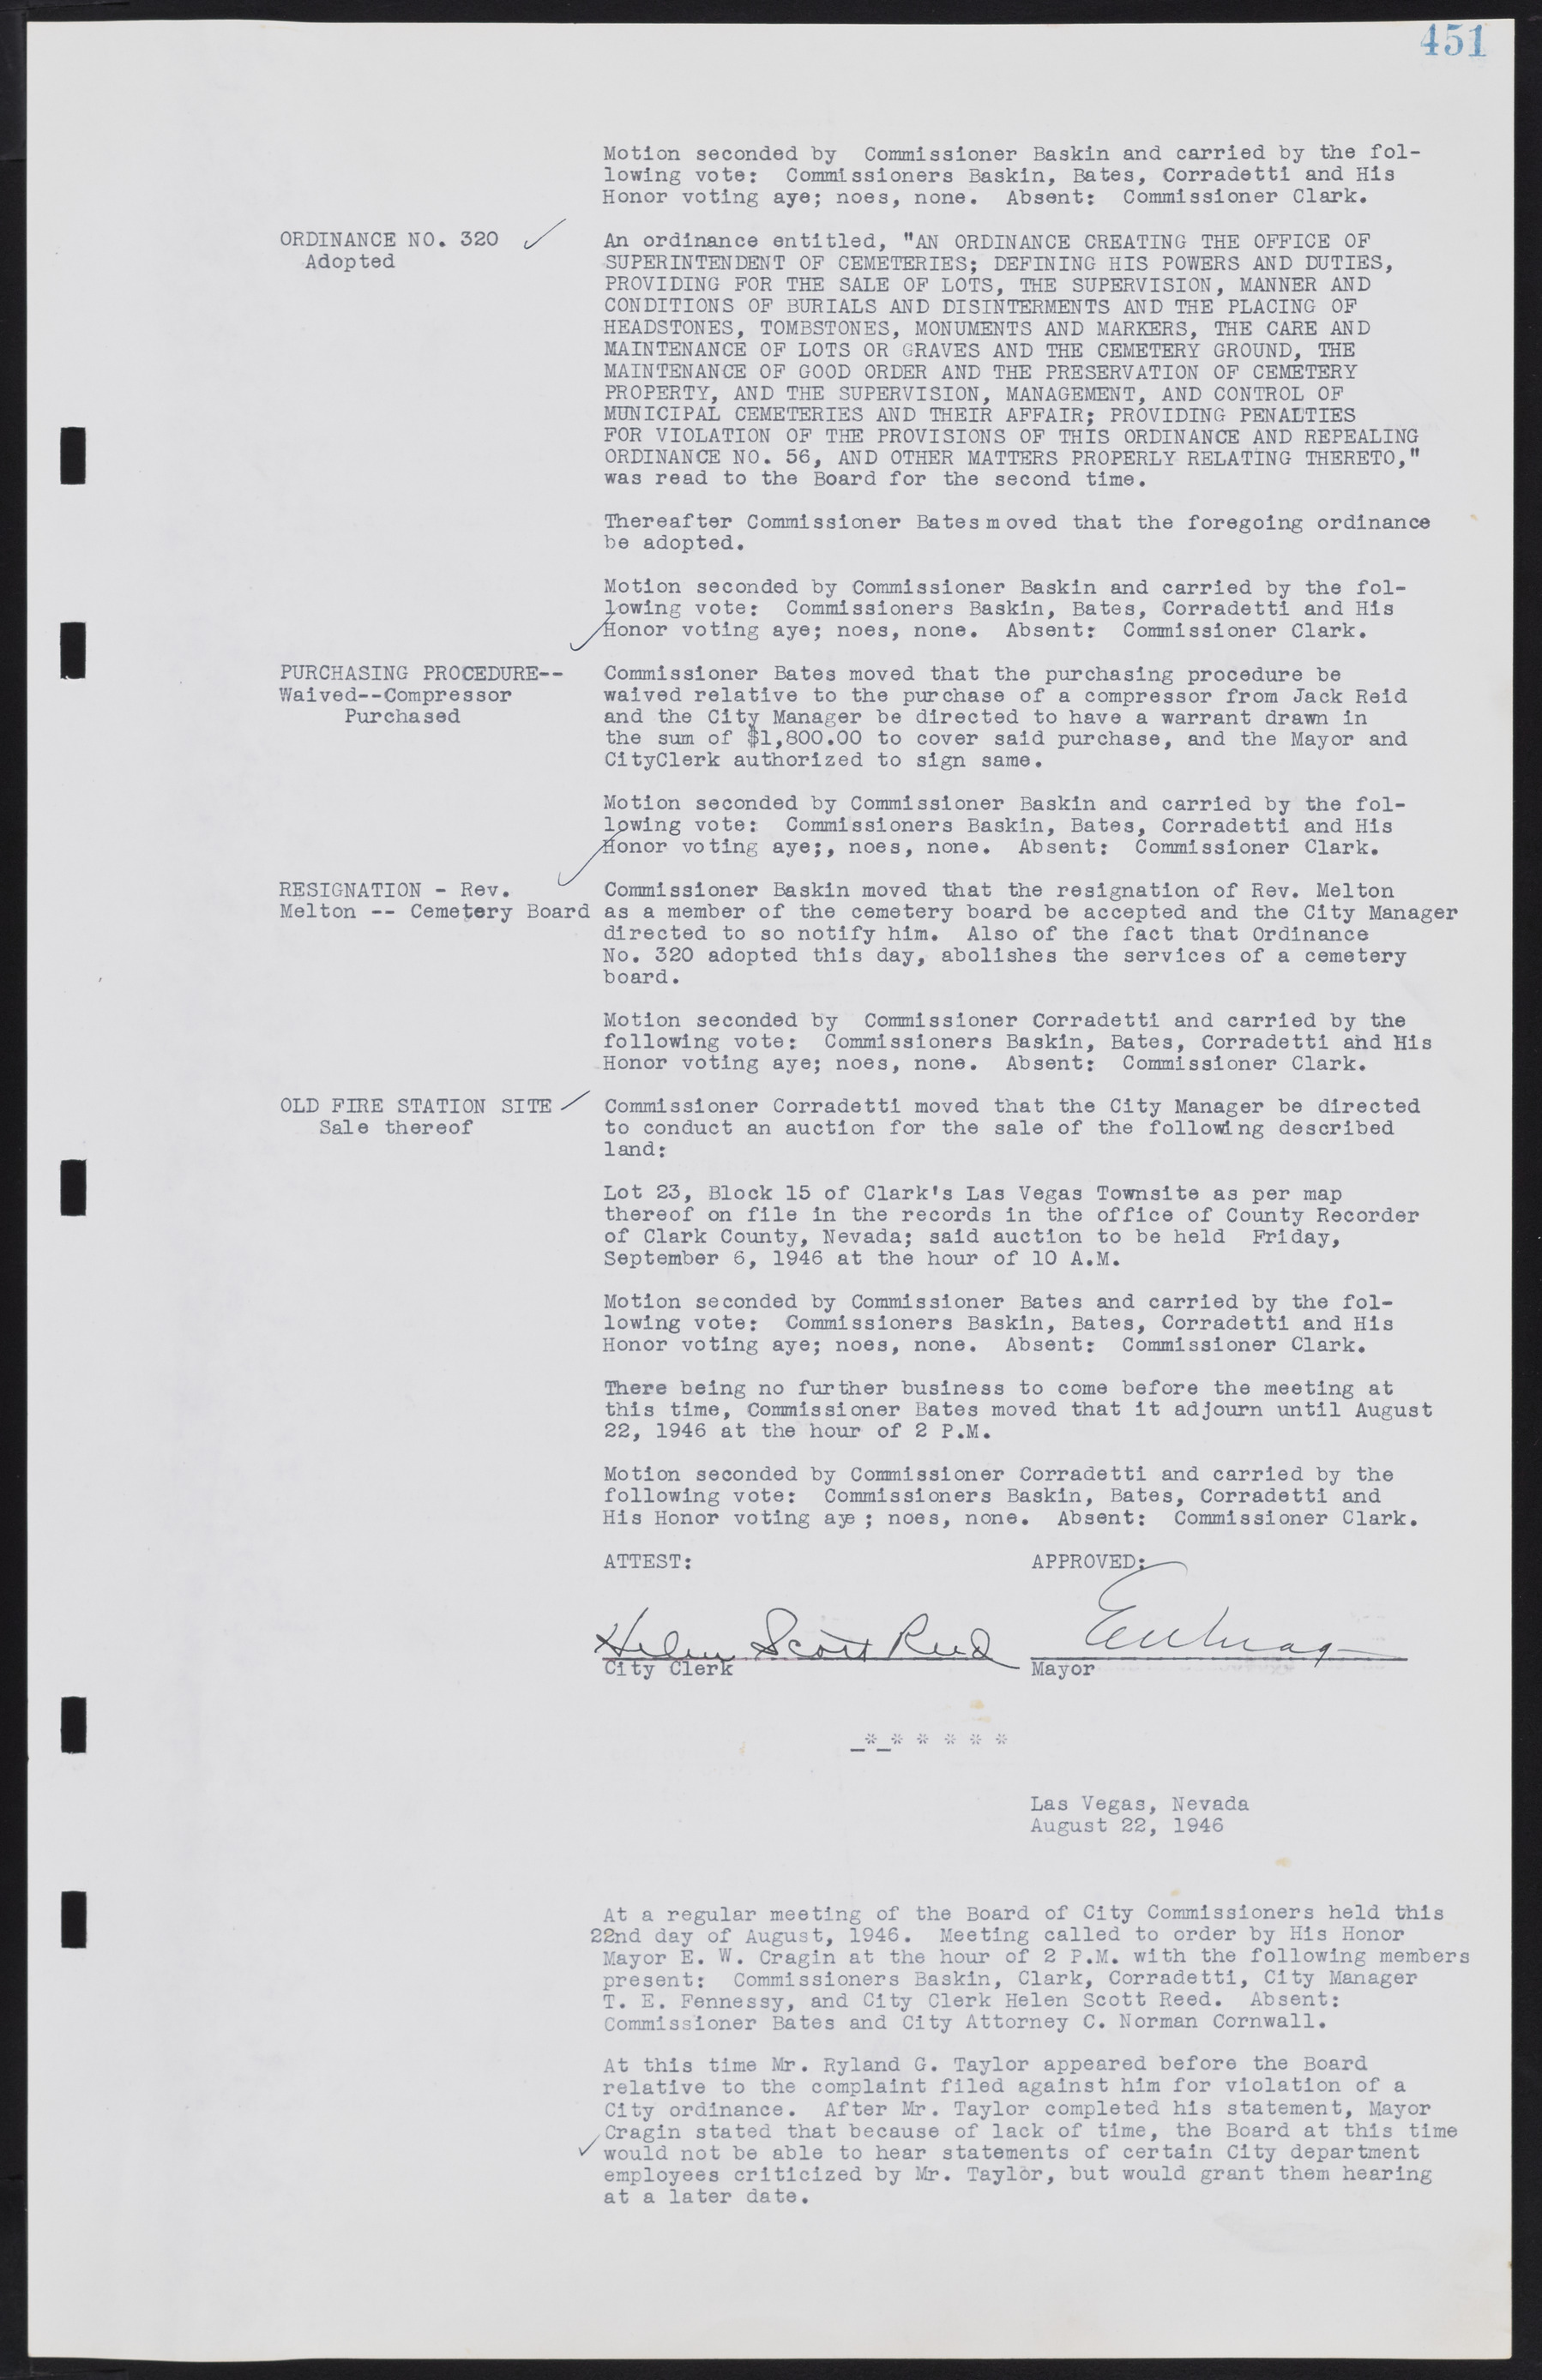 Las Vegas City Commission Minutes, August 11, 1942 to December 30, 1946, lvc000005-482